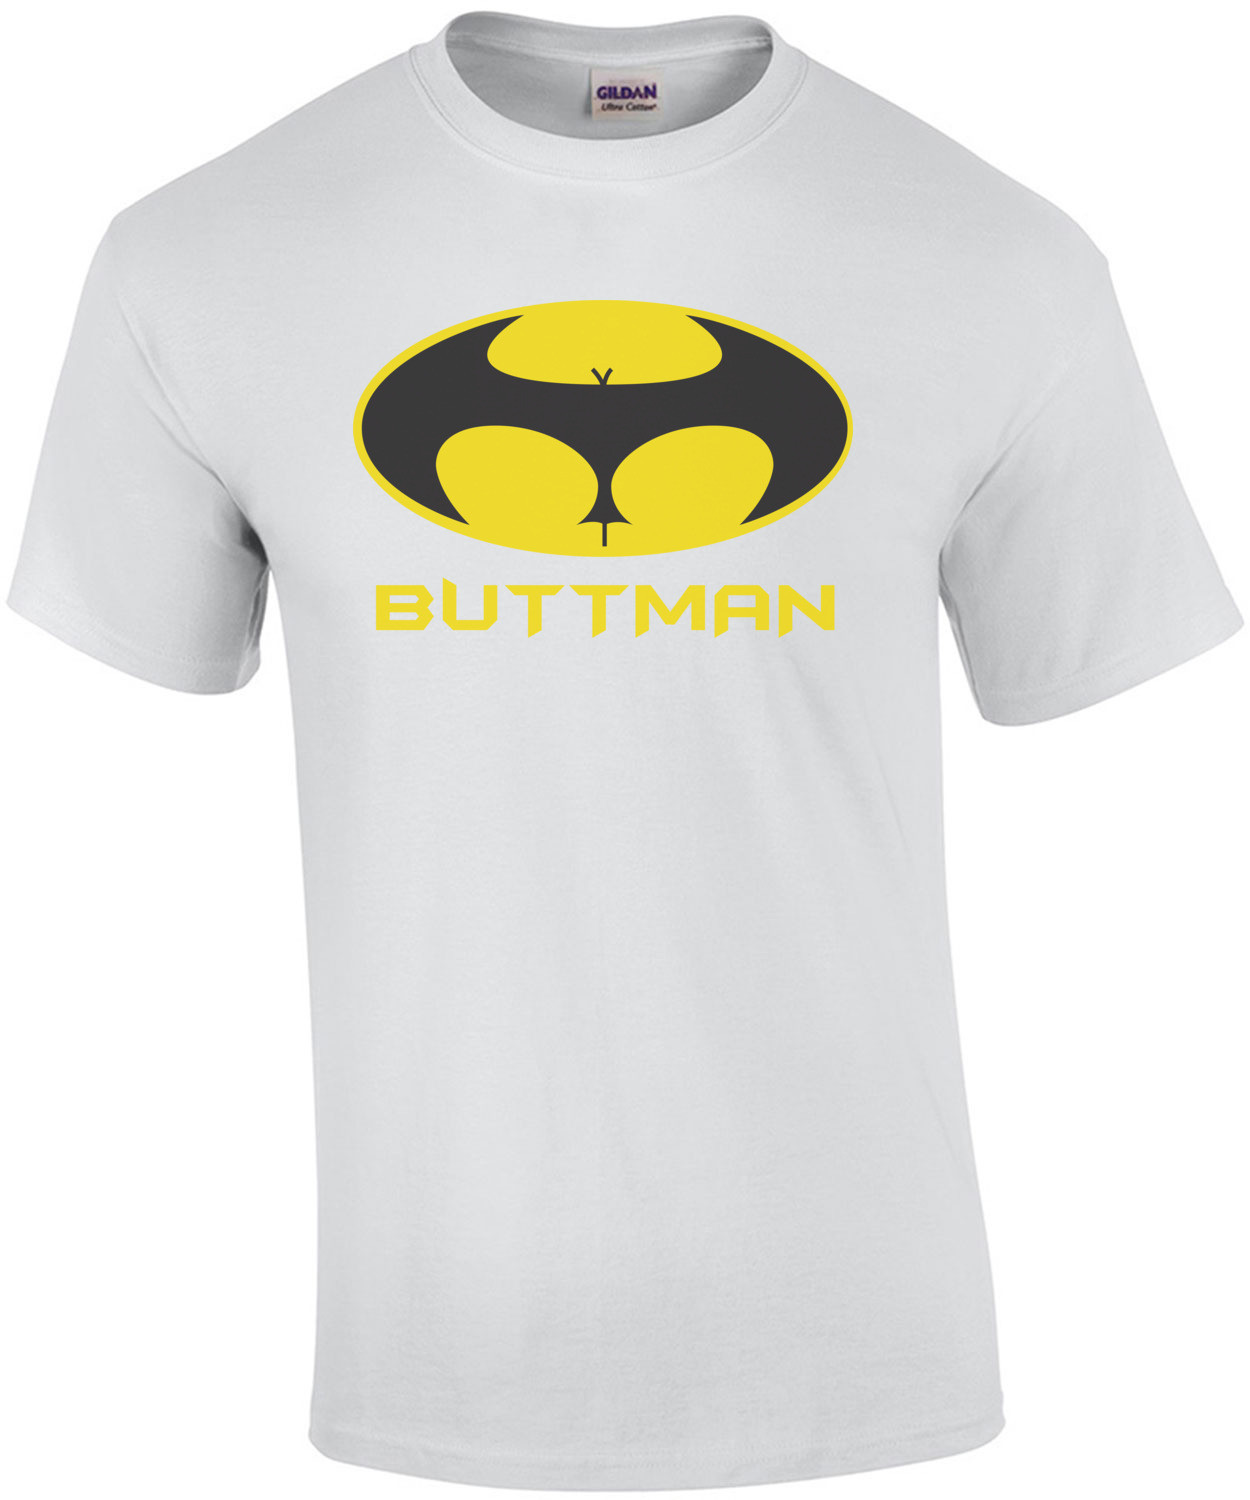 Buttman T-Shirt